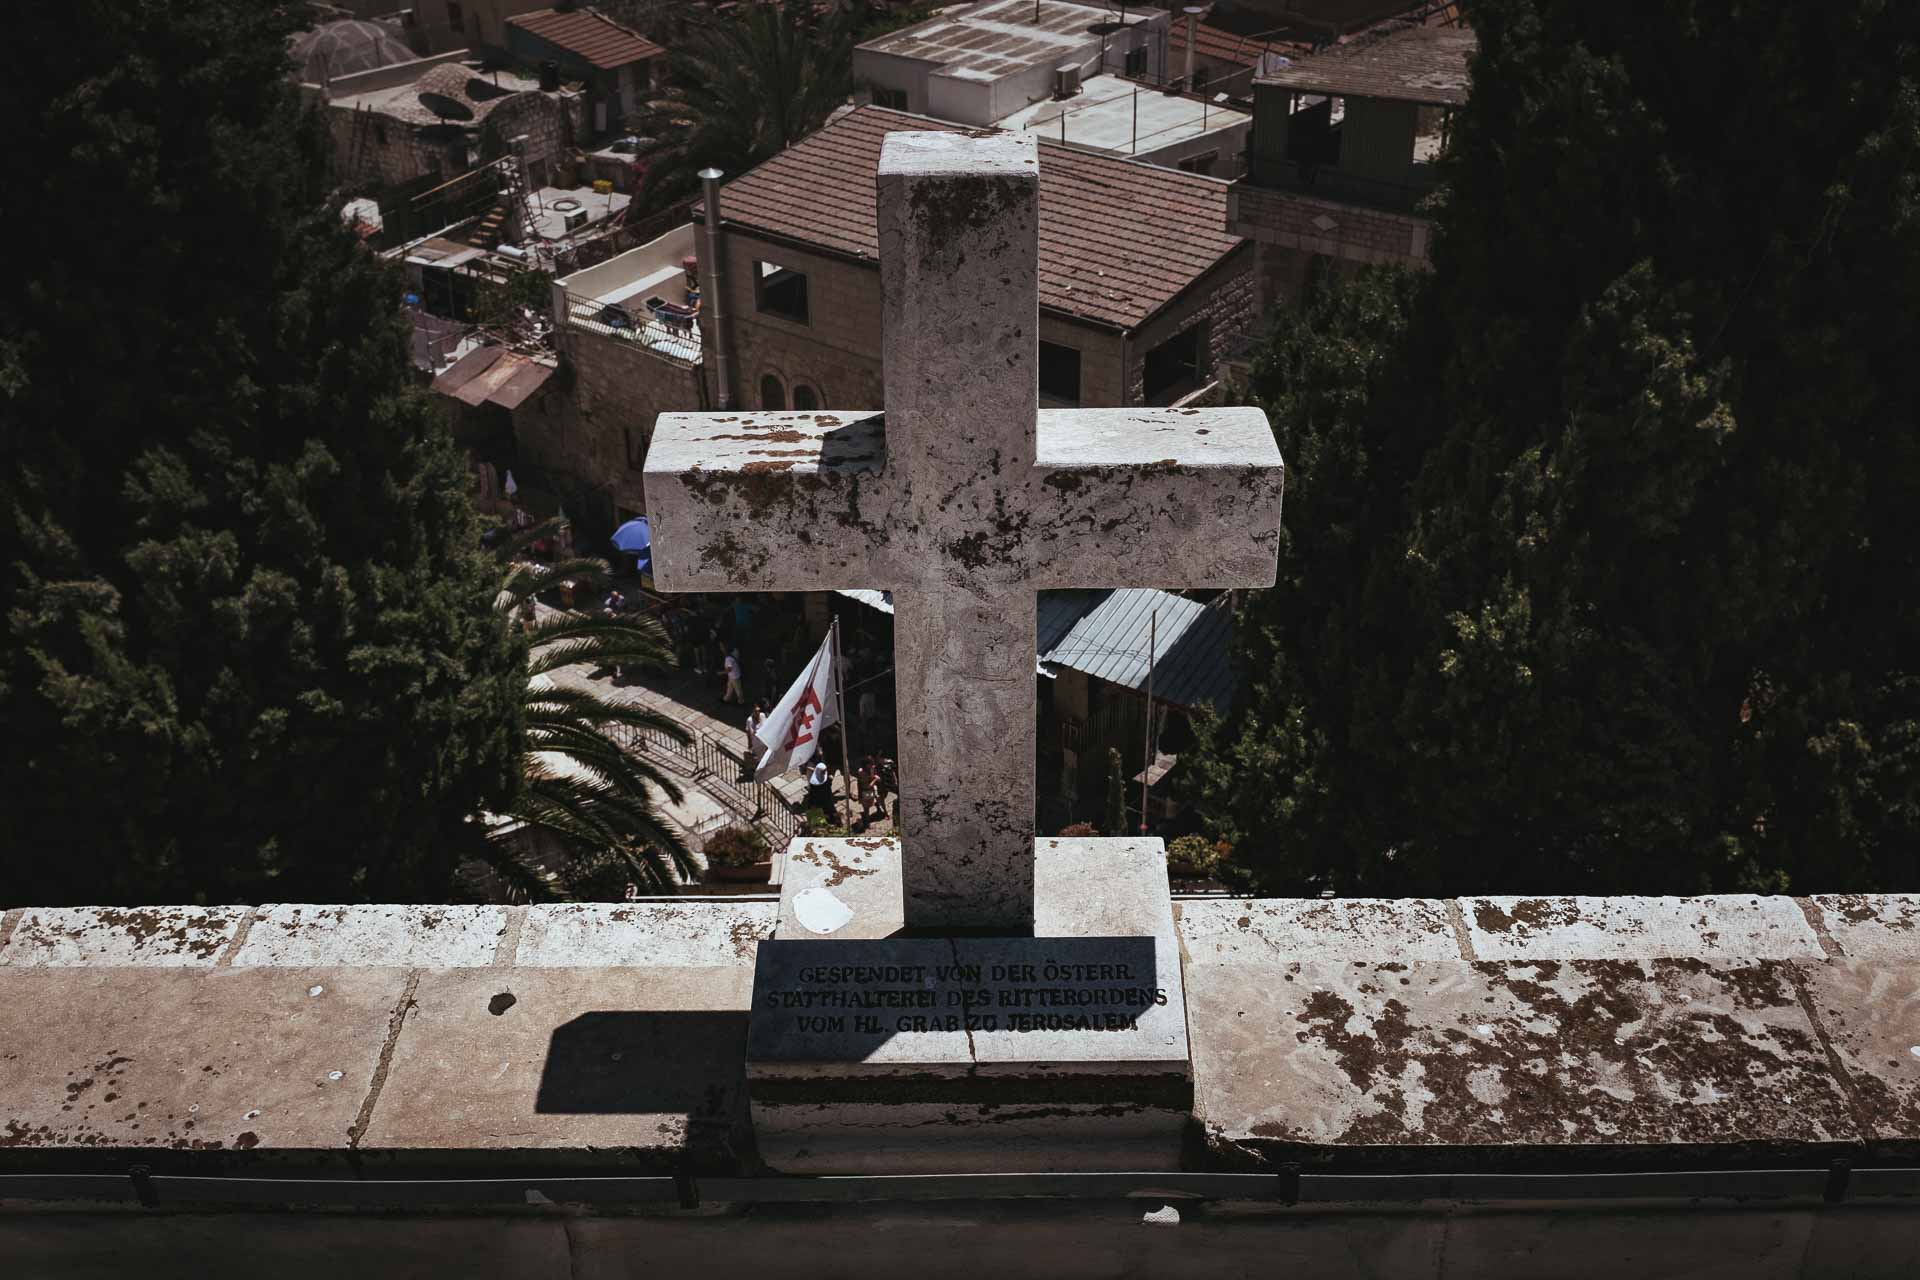 Dieses Bild zeigt das Österreichisches Pilger-Hospiz zur Heiligen Familie. Bilderserie, aufgenommen in Jerusalem. 2017.